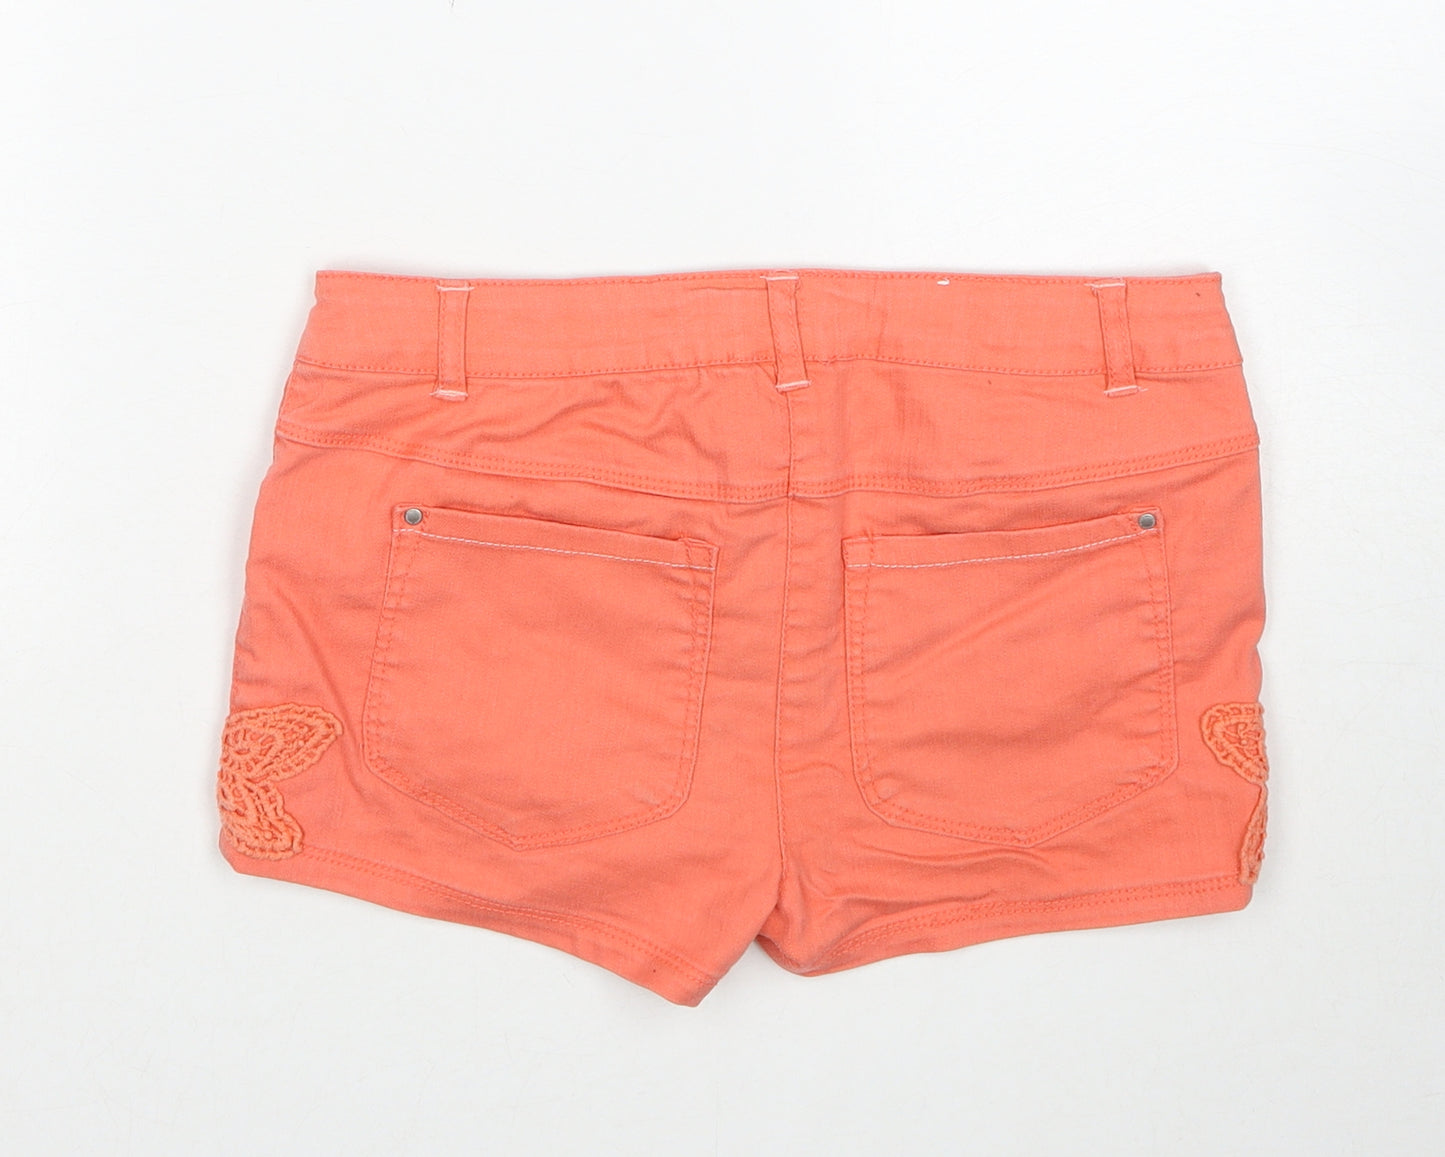 Vertbaudet Girls Orange Cotton Boyfriend Shorts Size 12 Years Regular Zip - Crochet Detail